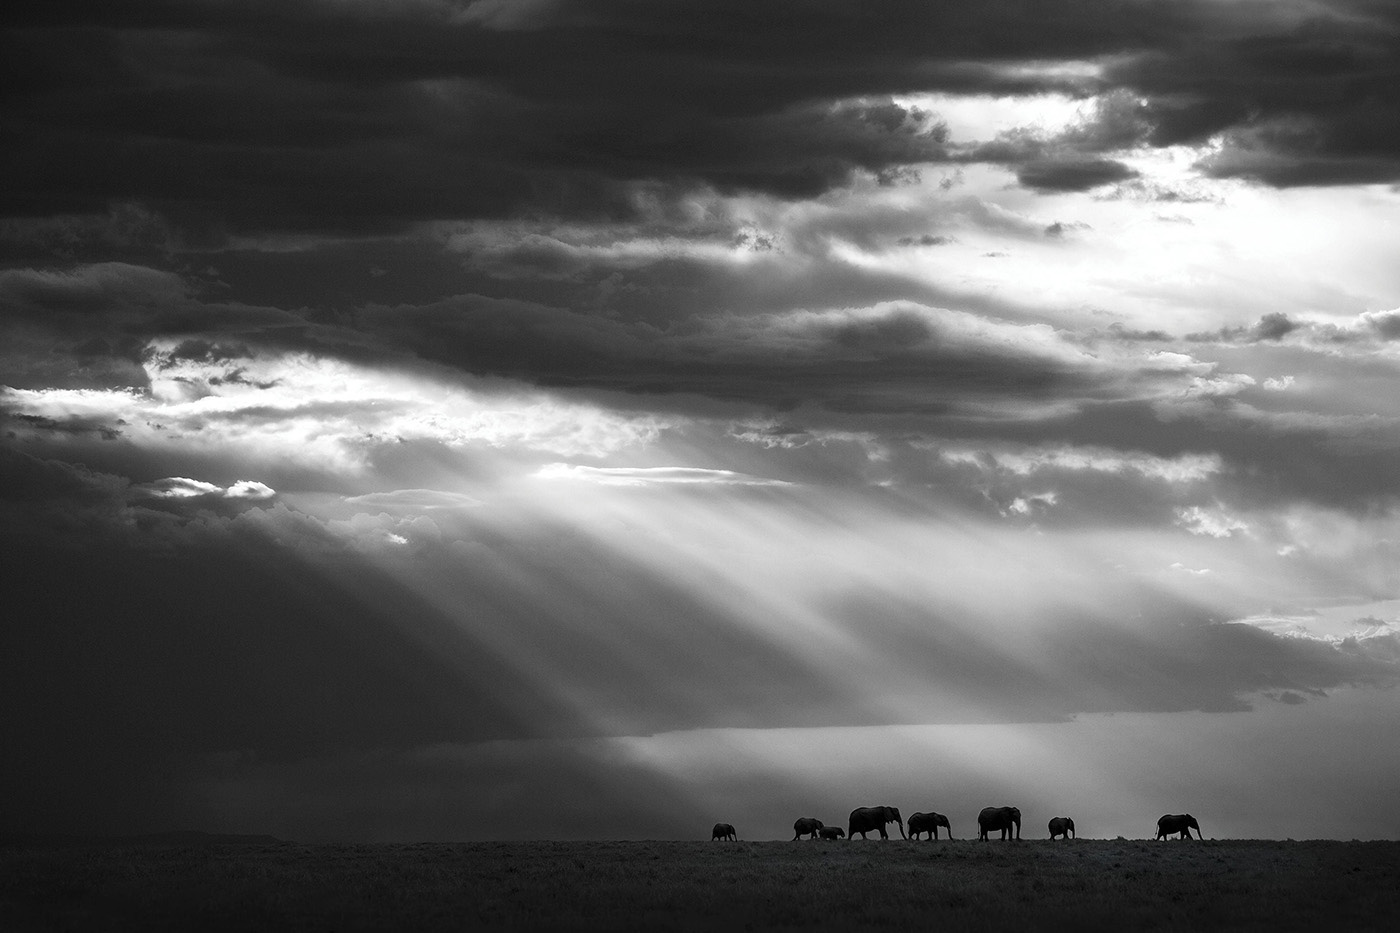 A photo taken in Kenya. Photo: Bjorn Persson